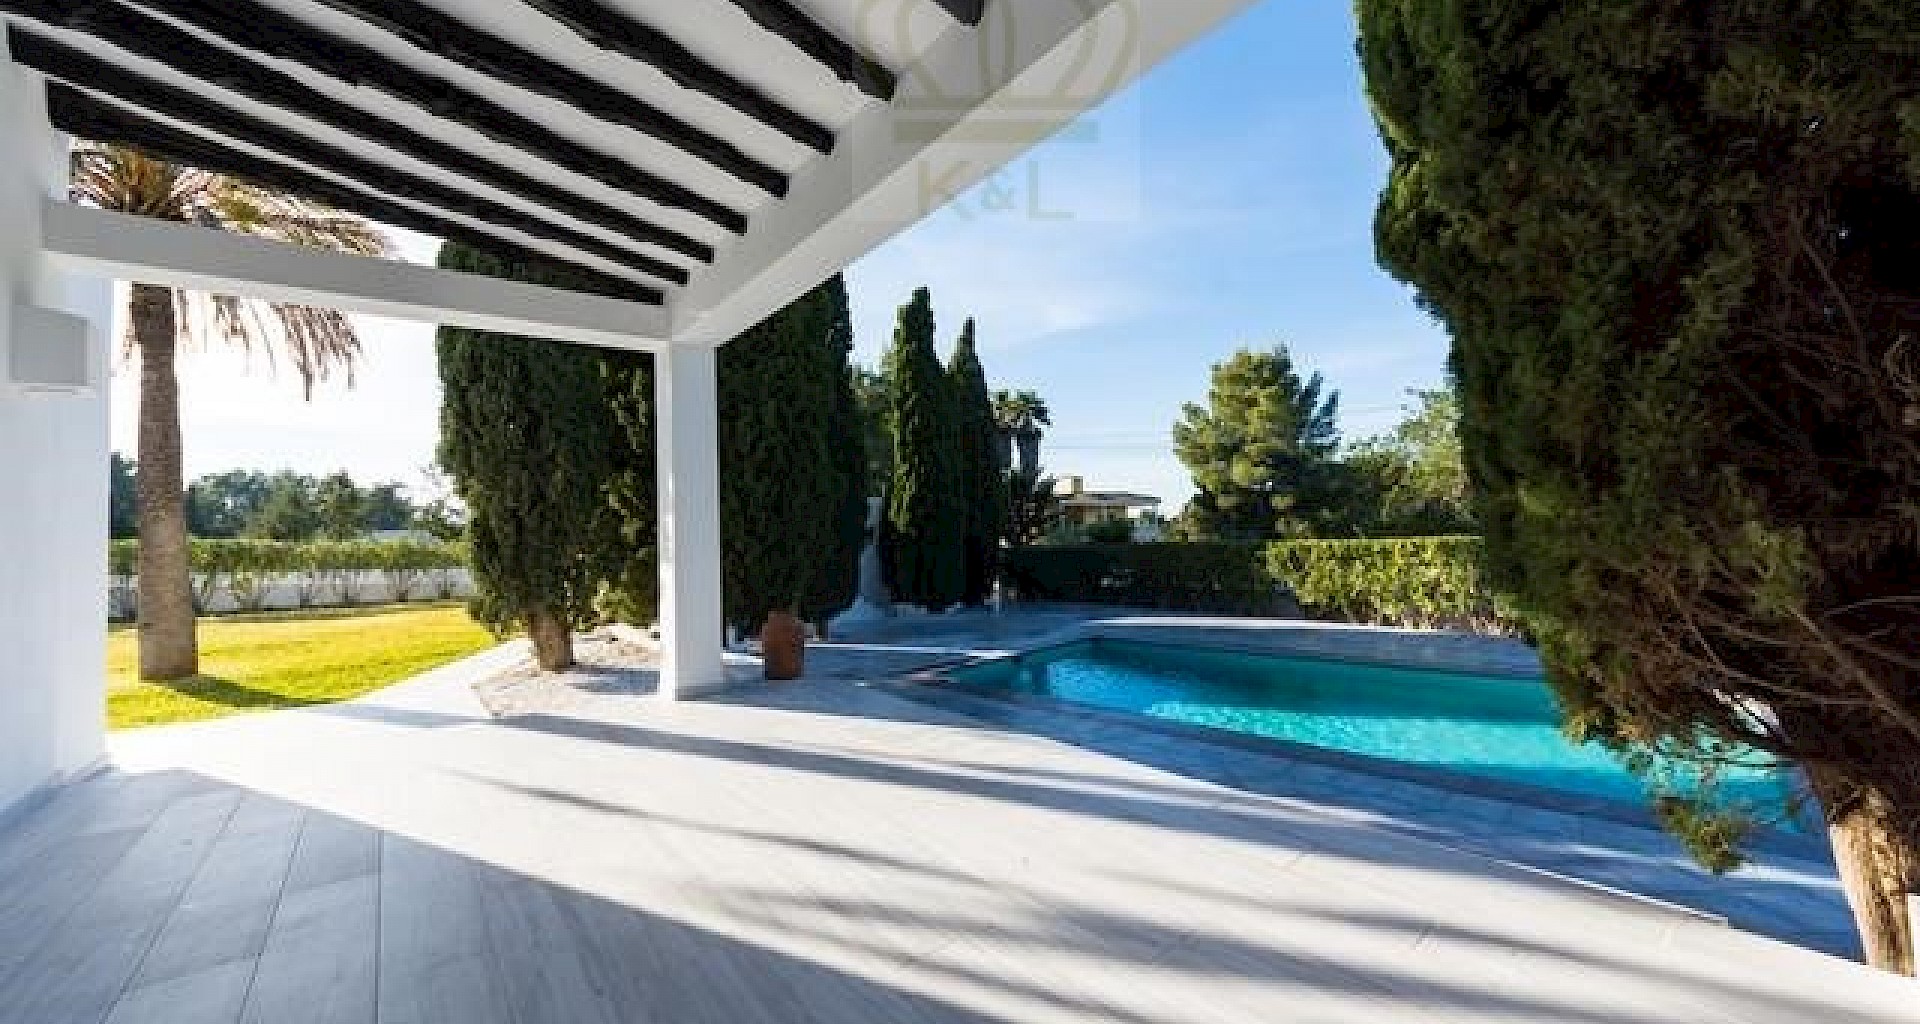 KROHN & LUEDEMANN Casa completamente renovada en Ibiza con piscina y mucha privacidad Benimussa (13)